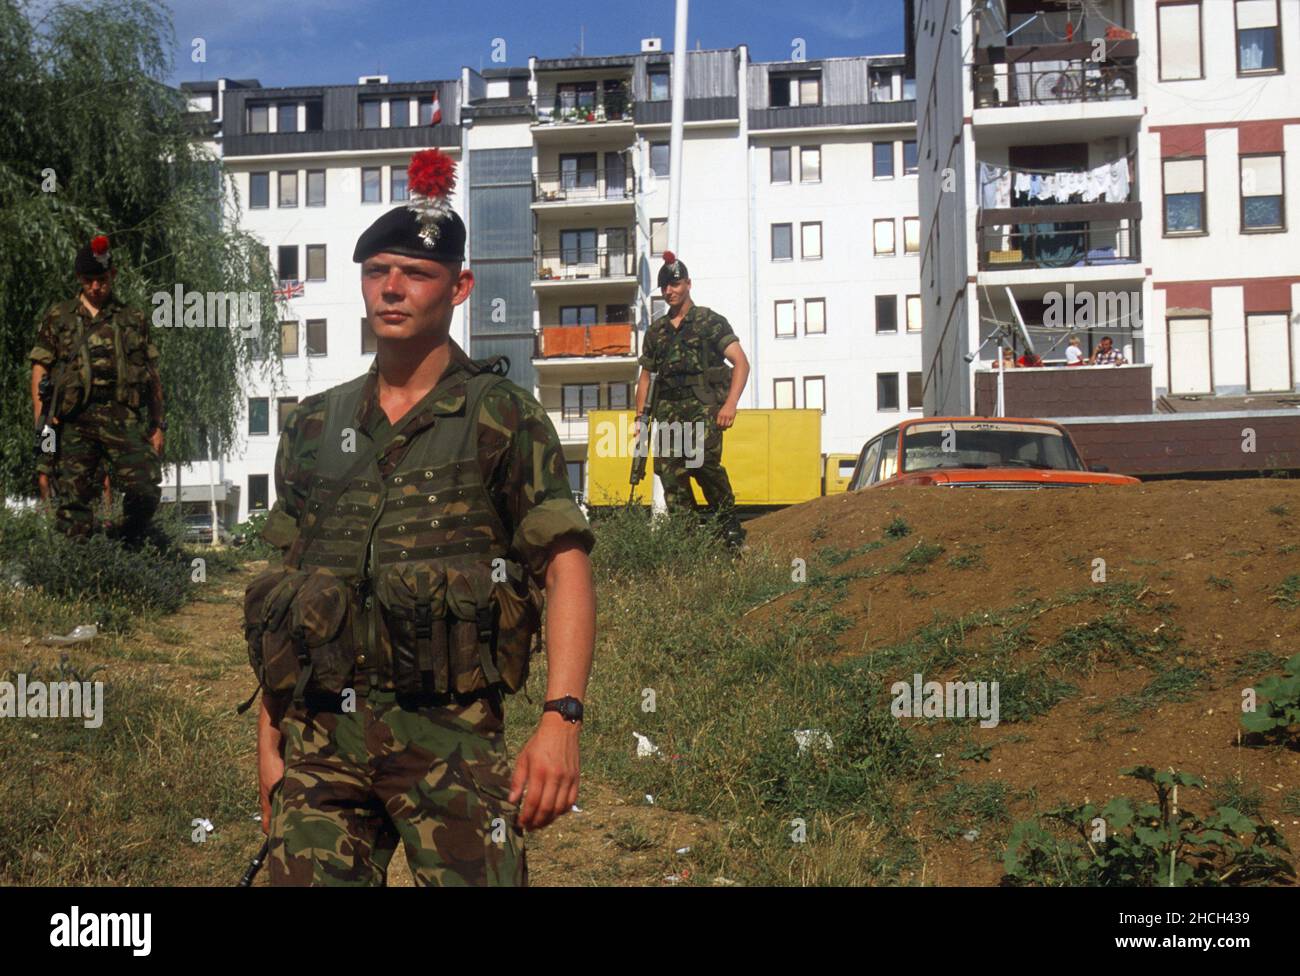 - NATO-Intervention Kosovo, englische Soldaten in Patrouille in den Außenbezirken von Pristina (Juli 2000) - Intervento NATO Kossovo, militari inglesi in pattuglia alla periferia di Pristina (Luglio 2000) Stockfoto